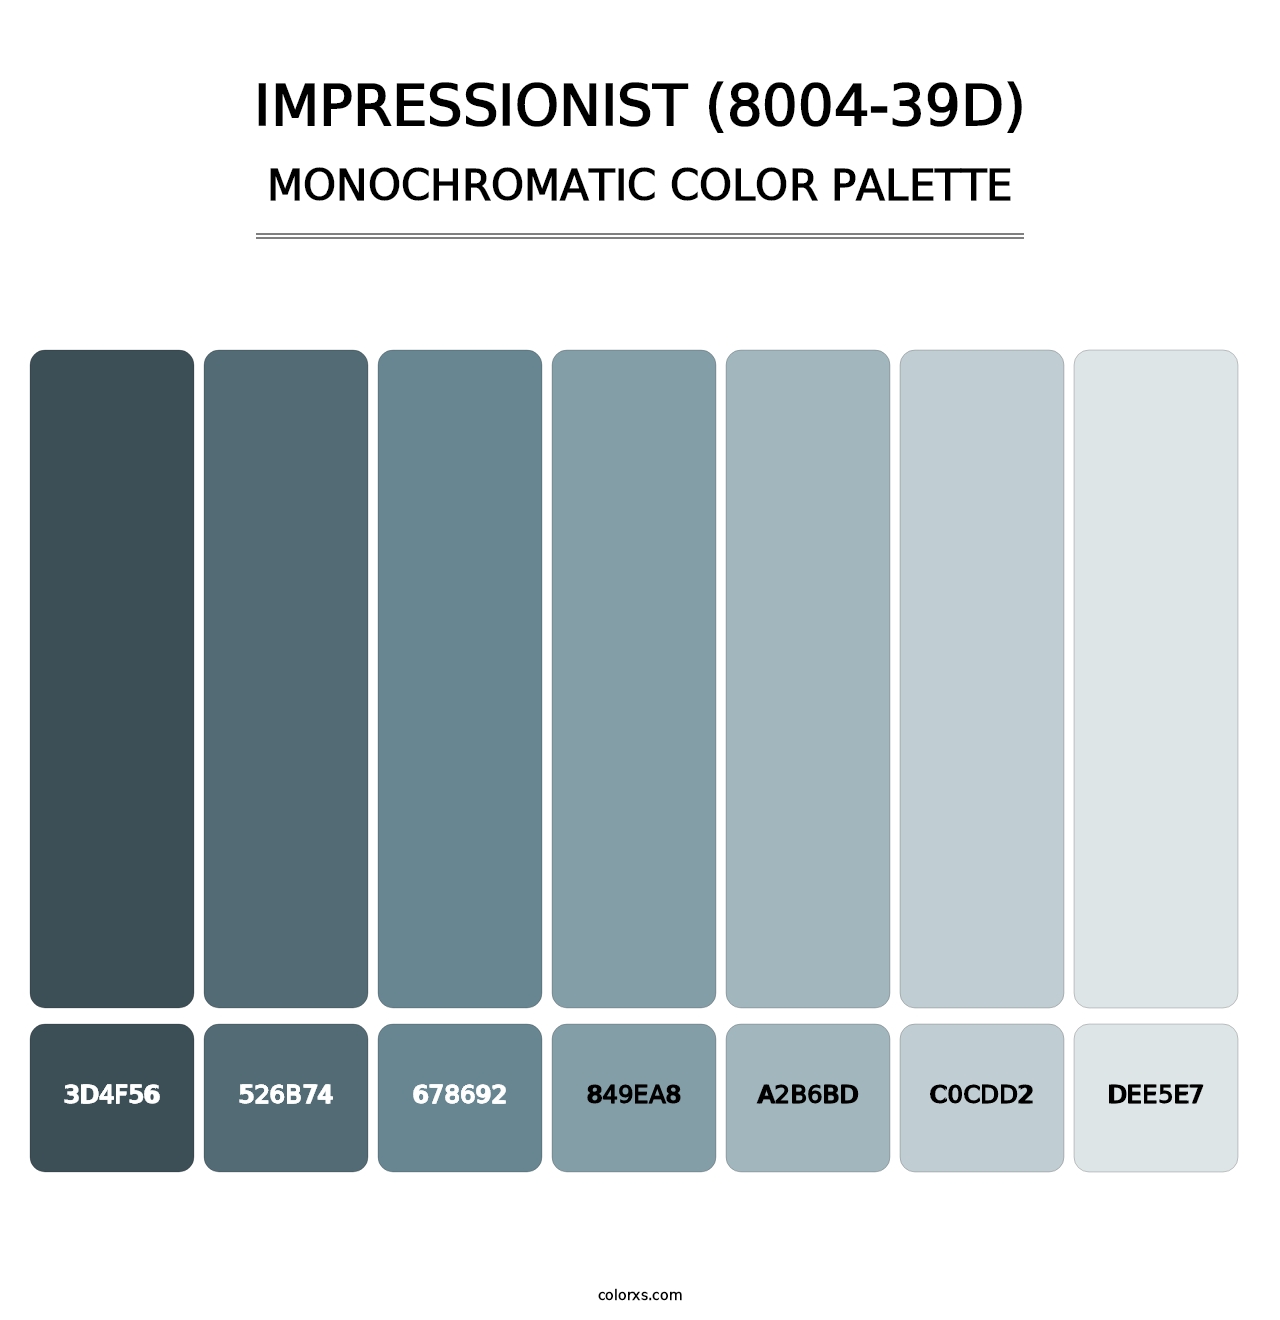 Impressionist (8004-39D) - Monochromatic Color Palette